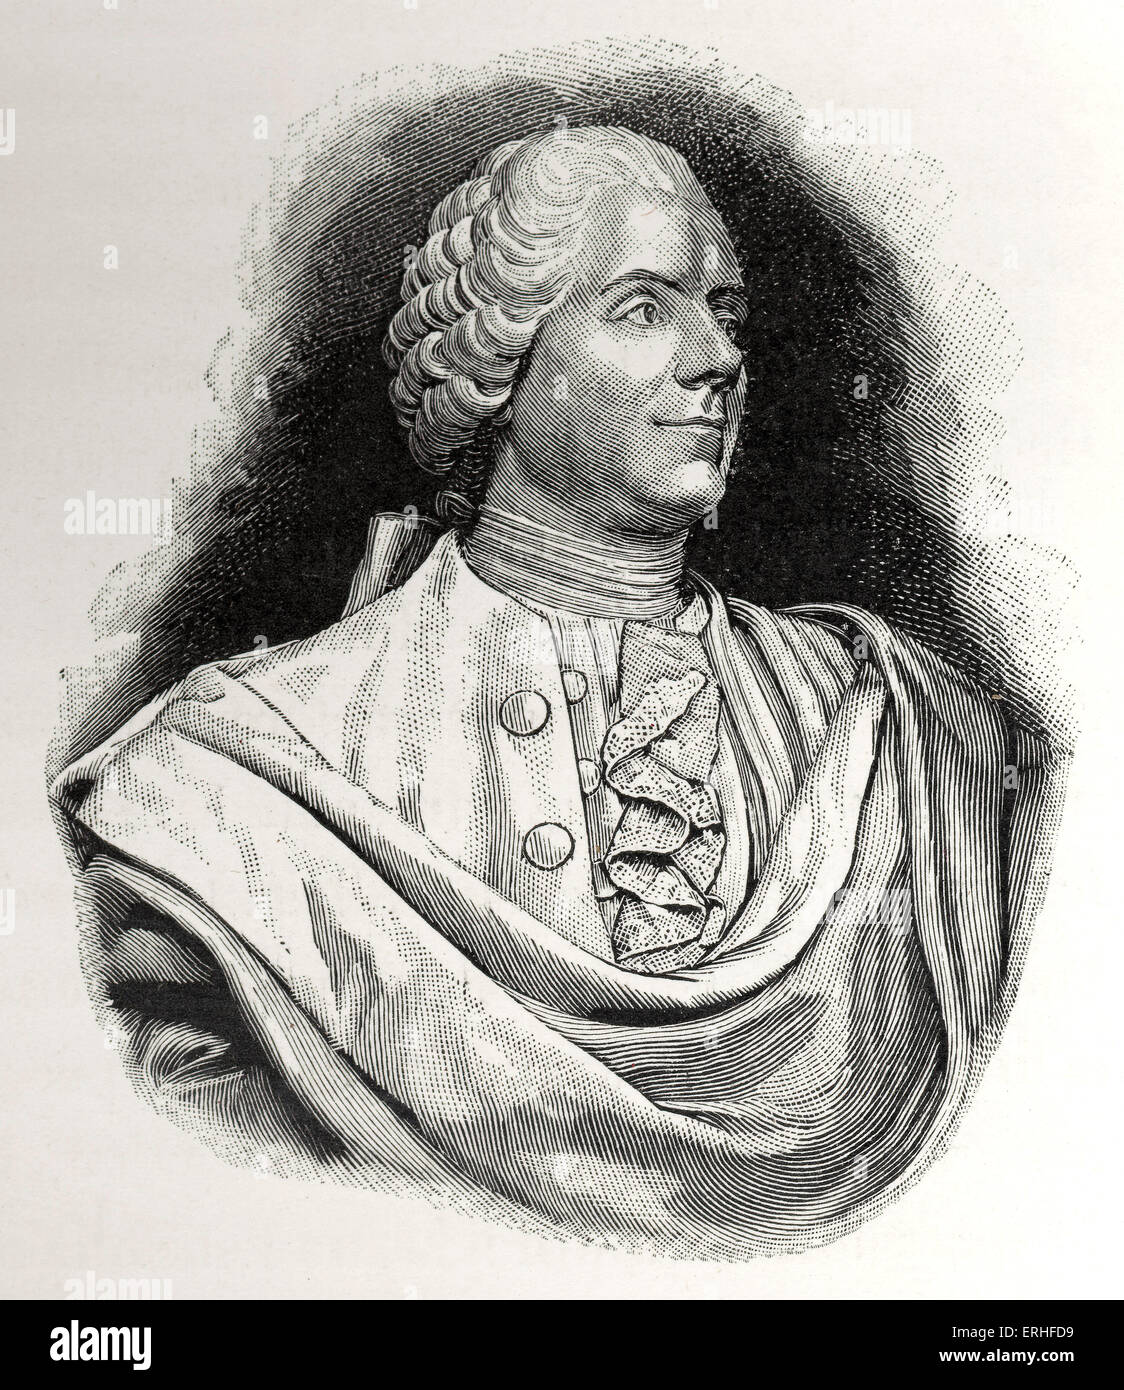 Pierre Marivaux - busto. El dramaturgo francés. 1688 - 1763 Foto de stock